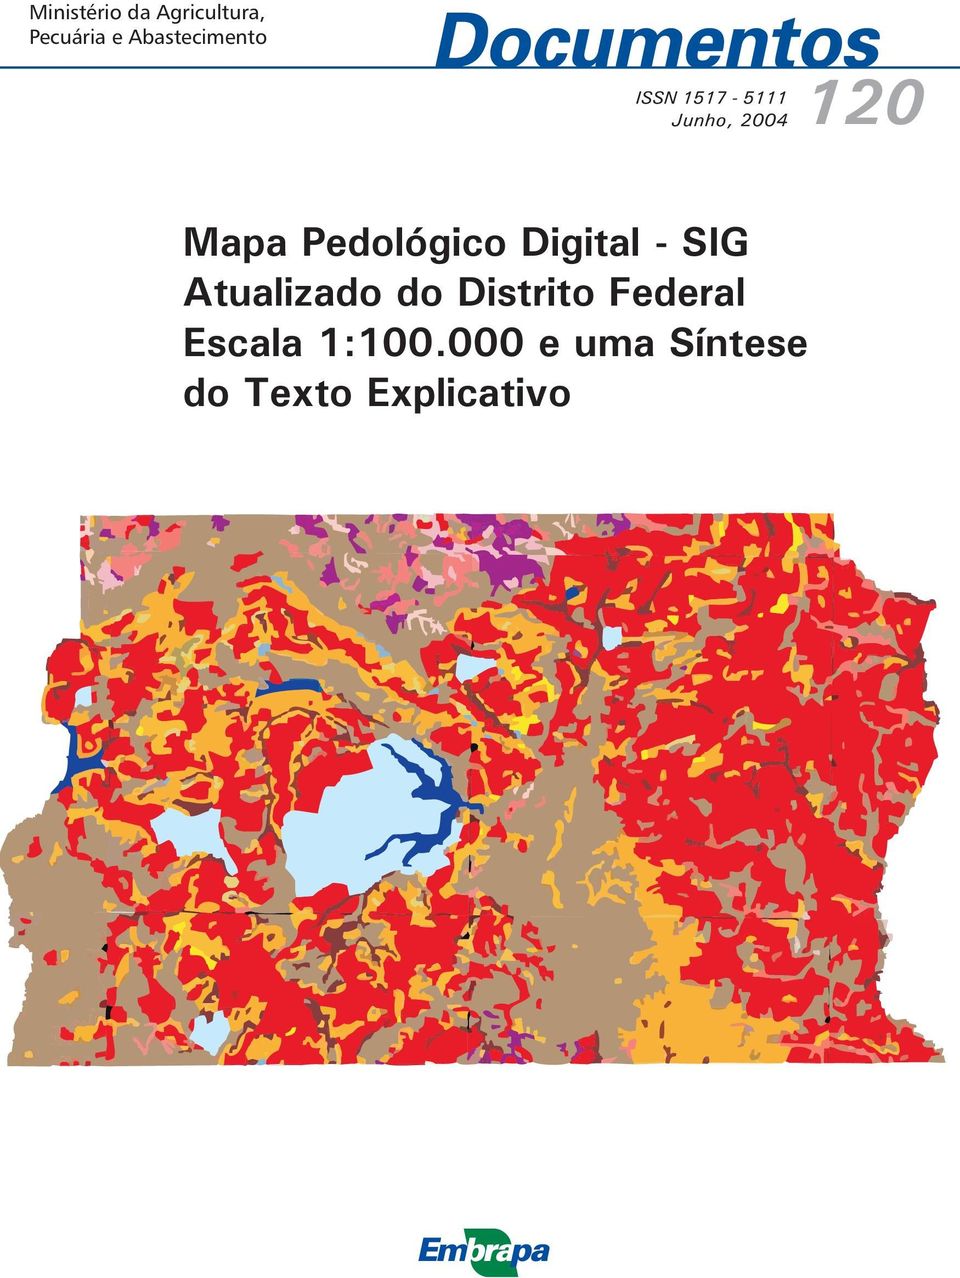 Mapa Pedológico Digital - SIG Atualizado do